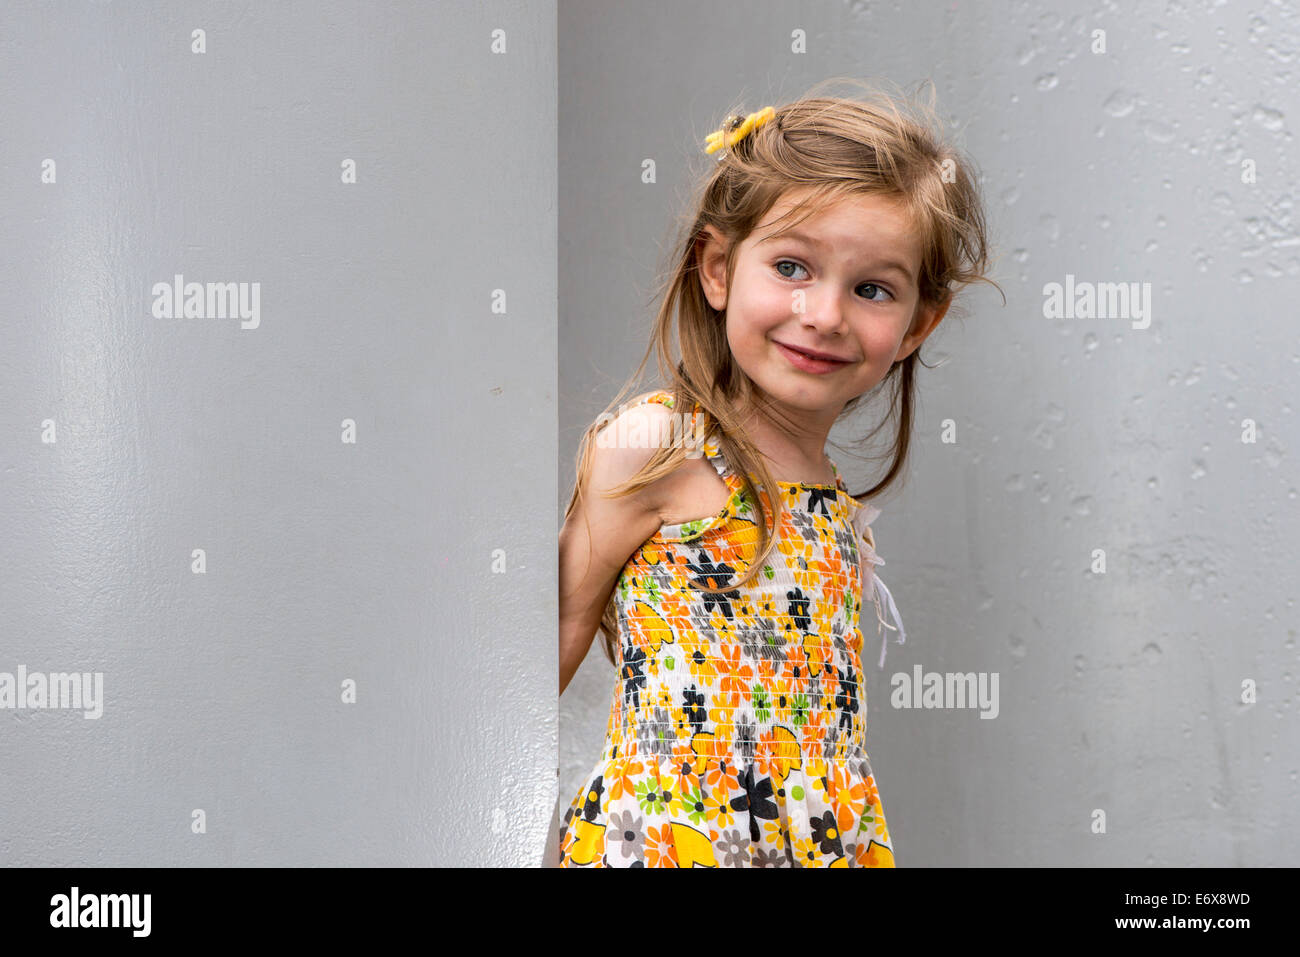 A smiling girl, 3 ans, porte une robe, debout entre les murs, Allemagne Banque D'Images